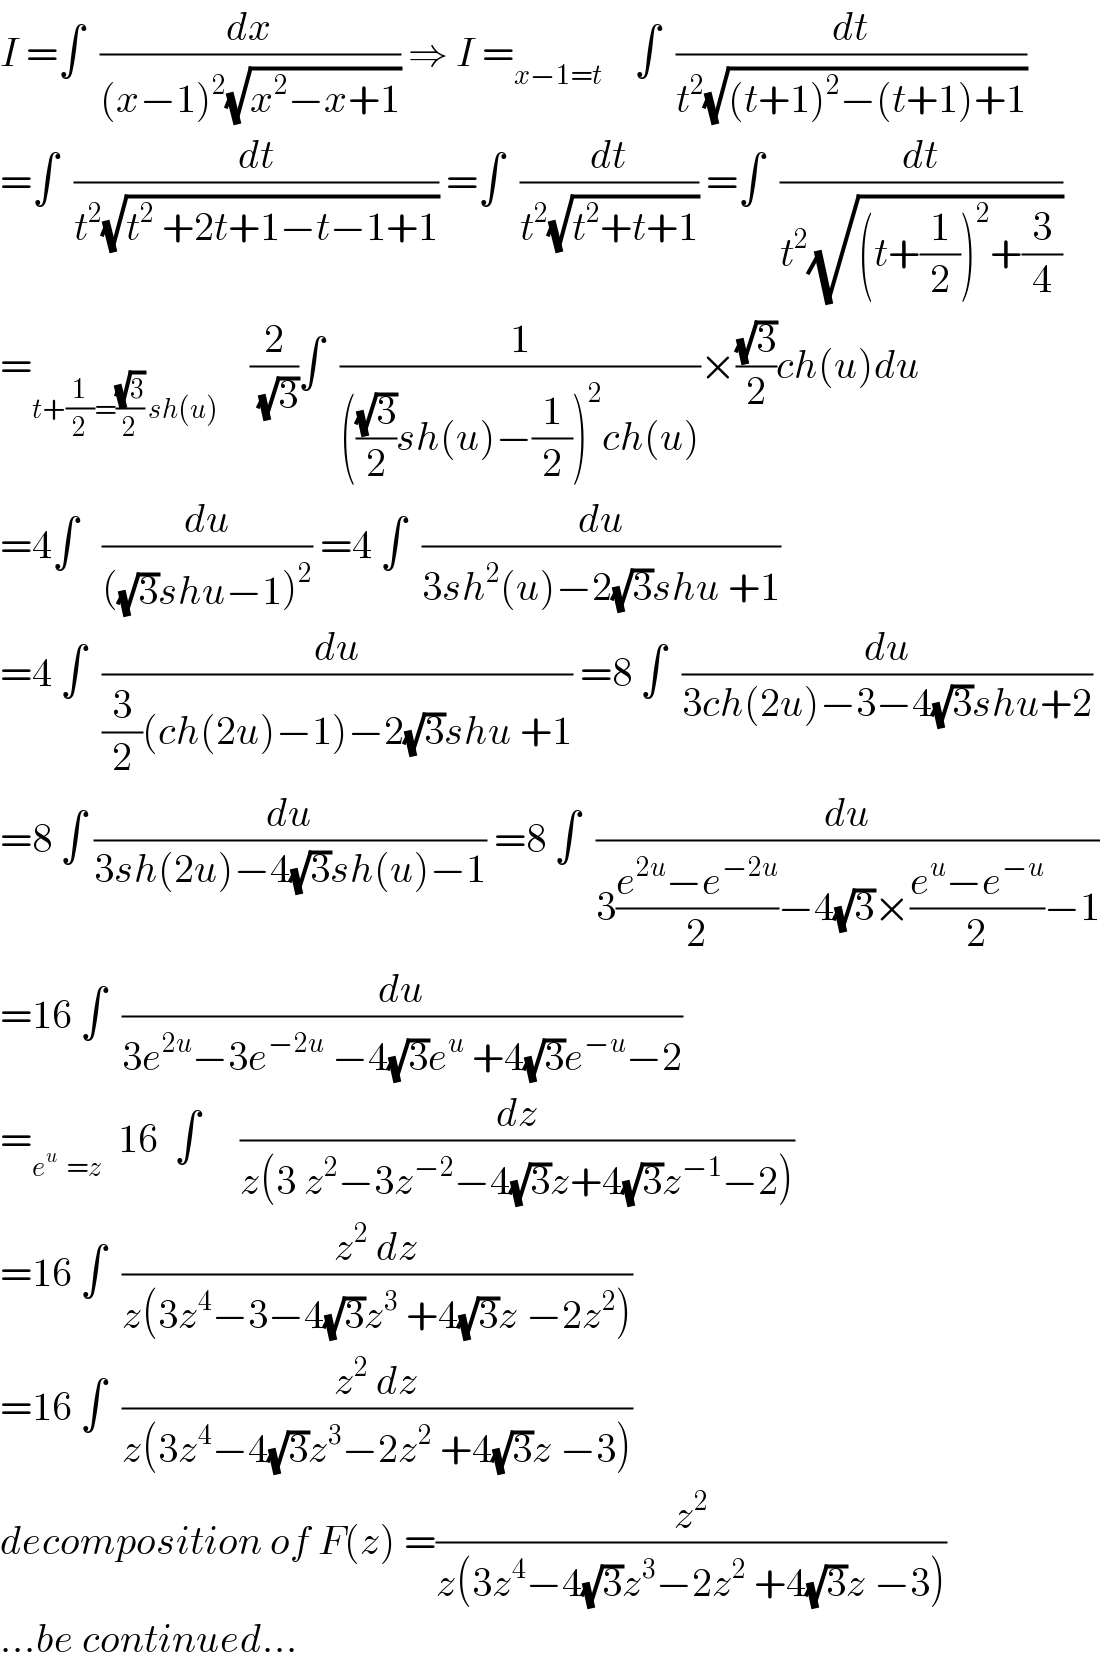 I =∫  (dx/((x−1)^2 (√(x^2 −x+1)))) ⇒ I =_(x−1=t)     ∫  (dt/(t^2 (√((t+1)^2 −(t+1)+1))))  =∫  (dt/(t^2 (√(t^2  +2t+1−t−1+1)))) =∫  (dt/(t^2 (√(t^2 +t+1)))) =∫  (dt/(t^2 (√((t+(1/2))^2 +(3/4)))))  =_(t+(1/2)=((√3)/2) sh(u))     (2/(√3))∫  (1/((((√3)/2)sh(u)−(1/2))^2 ch(u)))×((√3)/2)ch(u)du  =4∫   (du/(((√3)shu−1)^2 )) =4 ∫  (du/(3sh^2 (u)−2(√3)shu +1))  =4 ∫  (du/((3/2)(ch(2u)−1)−2(√3)shu +1)) =8 ∫  (du/(3ch(2u)−3−4(√3)shu+2))  =8 ∫ (du/(3sh(2u)−4(√3)sh(u)−1)) =8 ∫  (du/(3((e^(2u) −e^(−2u) )/2)−4(√3)×((e^u −e^(−u) )/2)−1))  =16 ∫  (du/(3e^(2u) −3e^(−2u)  −4(√3)e^u  +4(√3)e^(−u) −2))  =_(e^u   =z)   16  ∫     (dz/(z(3 z^2 −3z^(−2) −4(√3)z+4(√3)z^(−1) −2)))  =16 ∫  ((z^2  dz)/(z(3z^4 −3−4(√3)z^3  +4(√3)z −2z^2 )))  =16 ∫  ((z^2  dz)/(z(3z^4 −4(√3)z^3 −2z^2  +4(√3)z −3)))  decomposition of F(z) =(z^2 /(z(3z^4 −4(√3)z^3 −2z^2  +4(√3)z −3)))  ...be continued...  